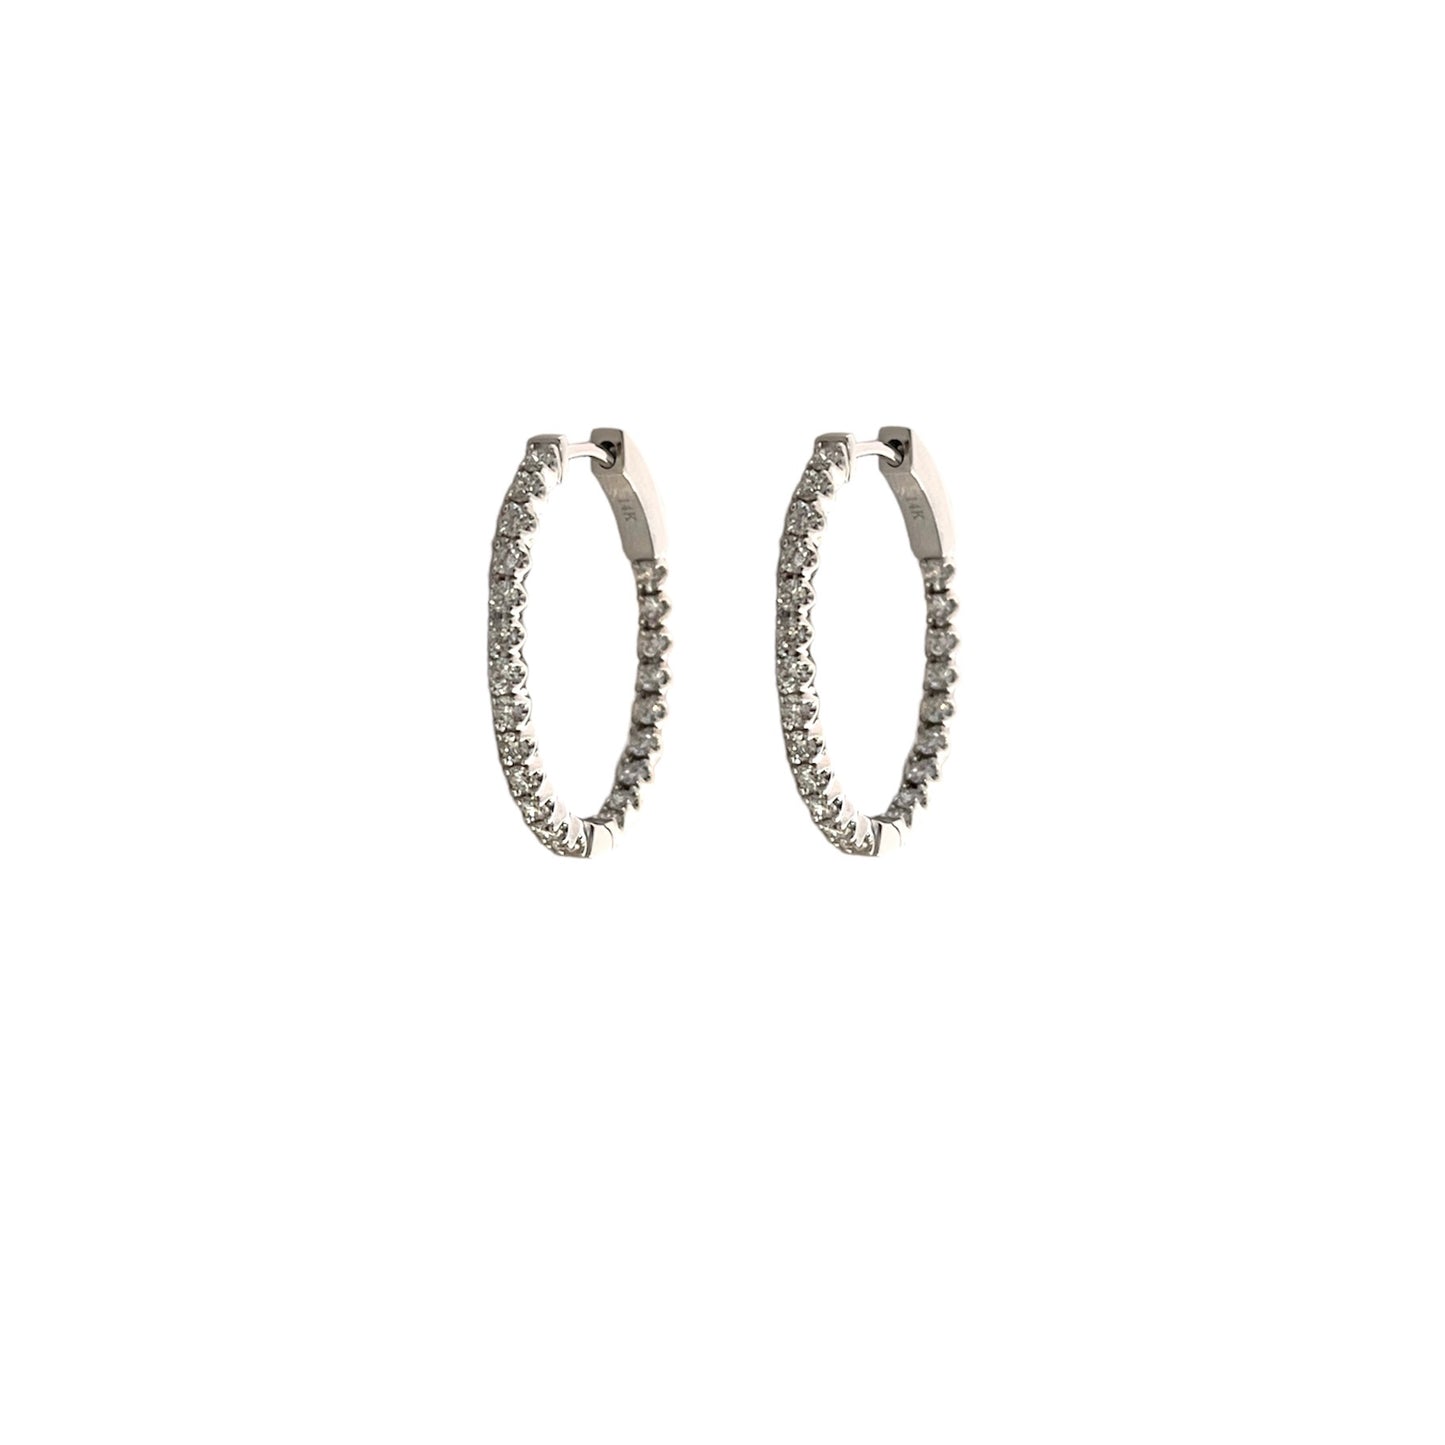 Inside Out Oval Diamond Hoop Earrings